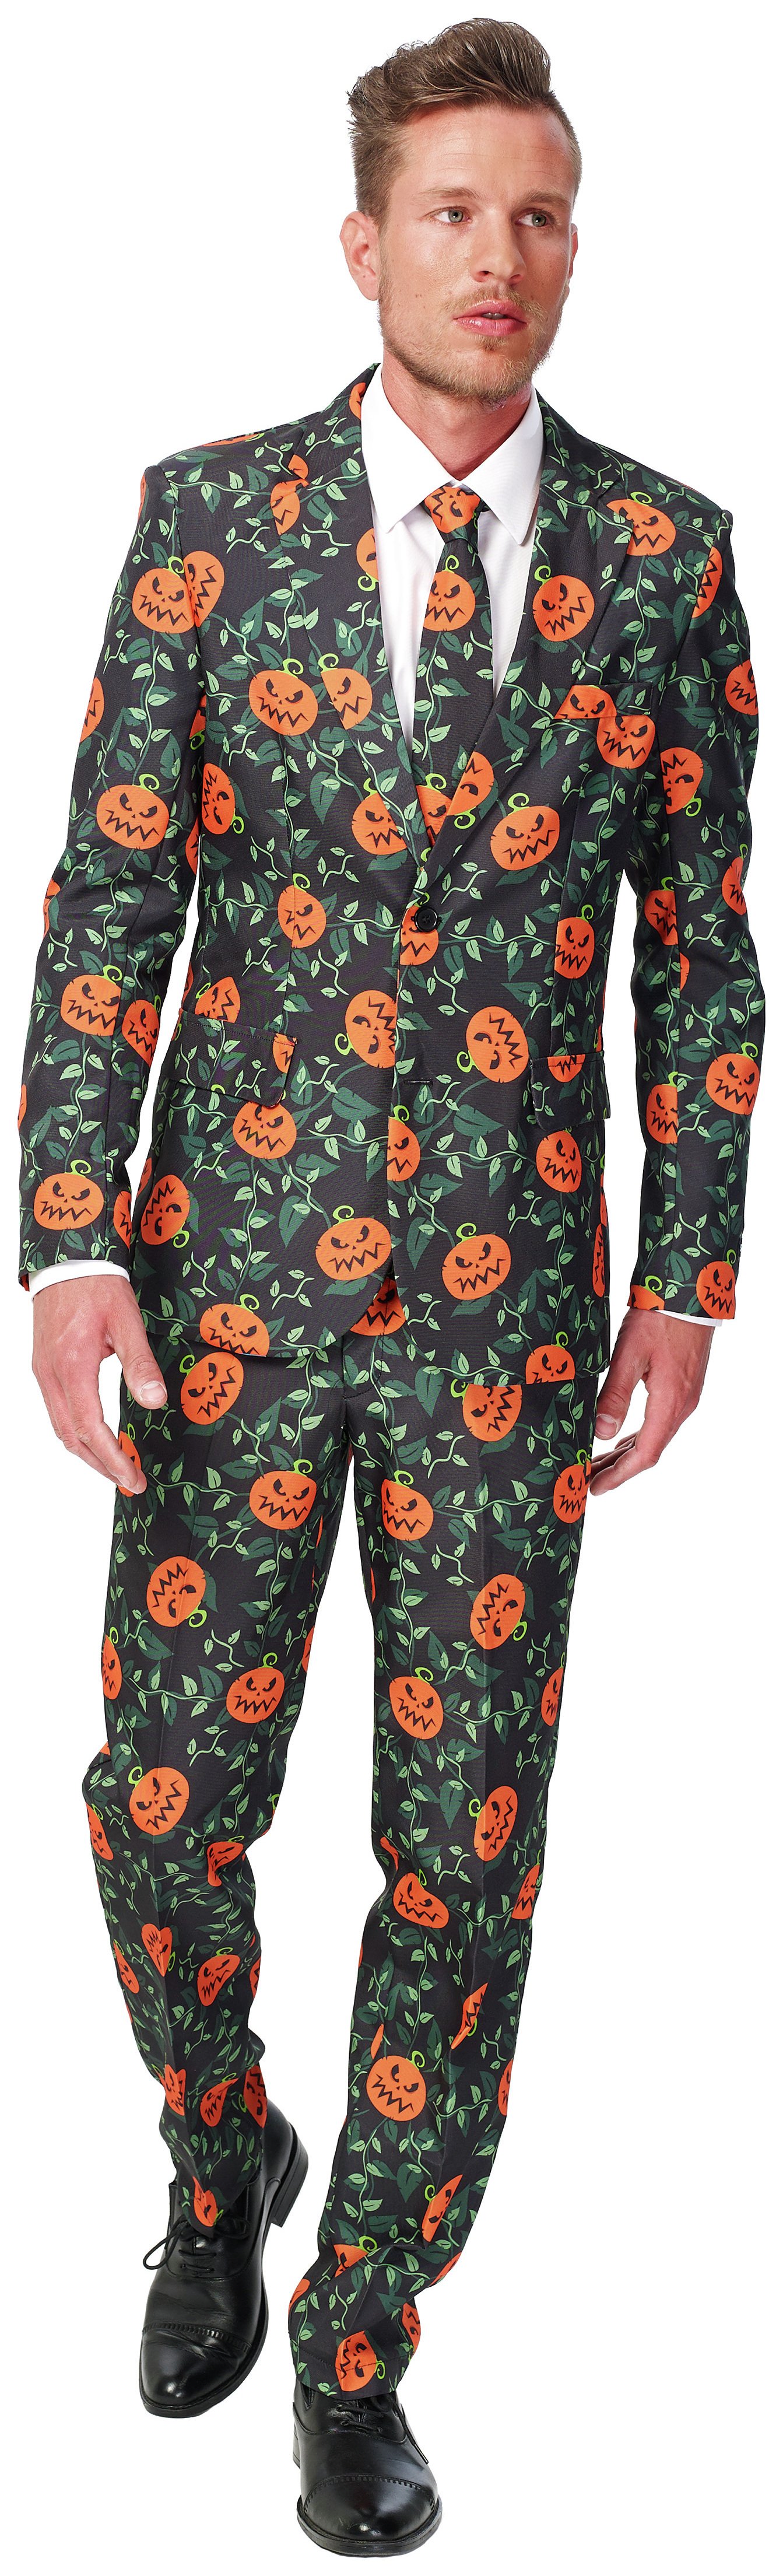 Suitmeister - Pumpkin Leaves Suit - Size - L Review